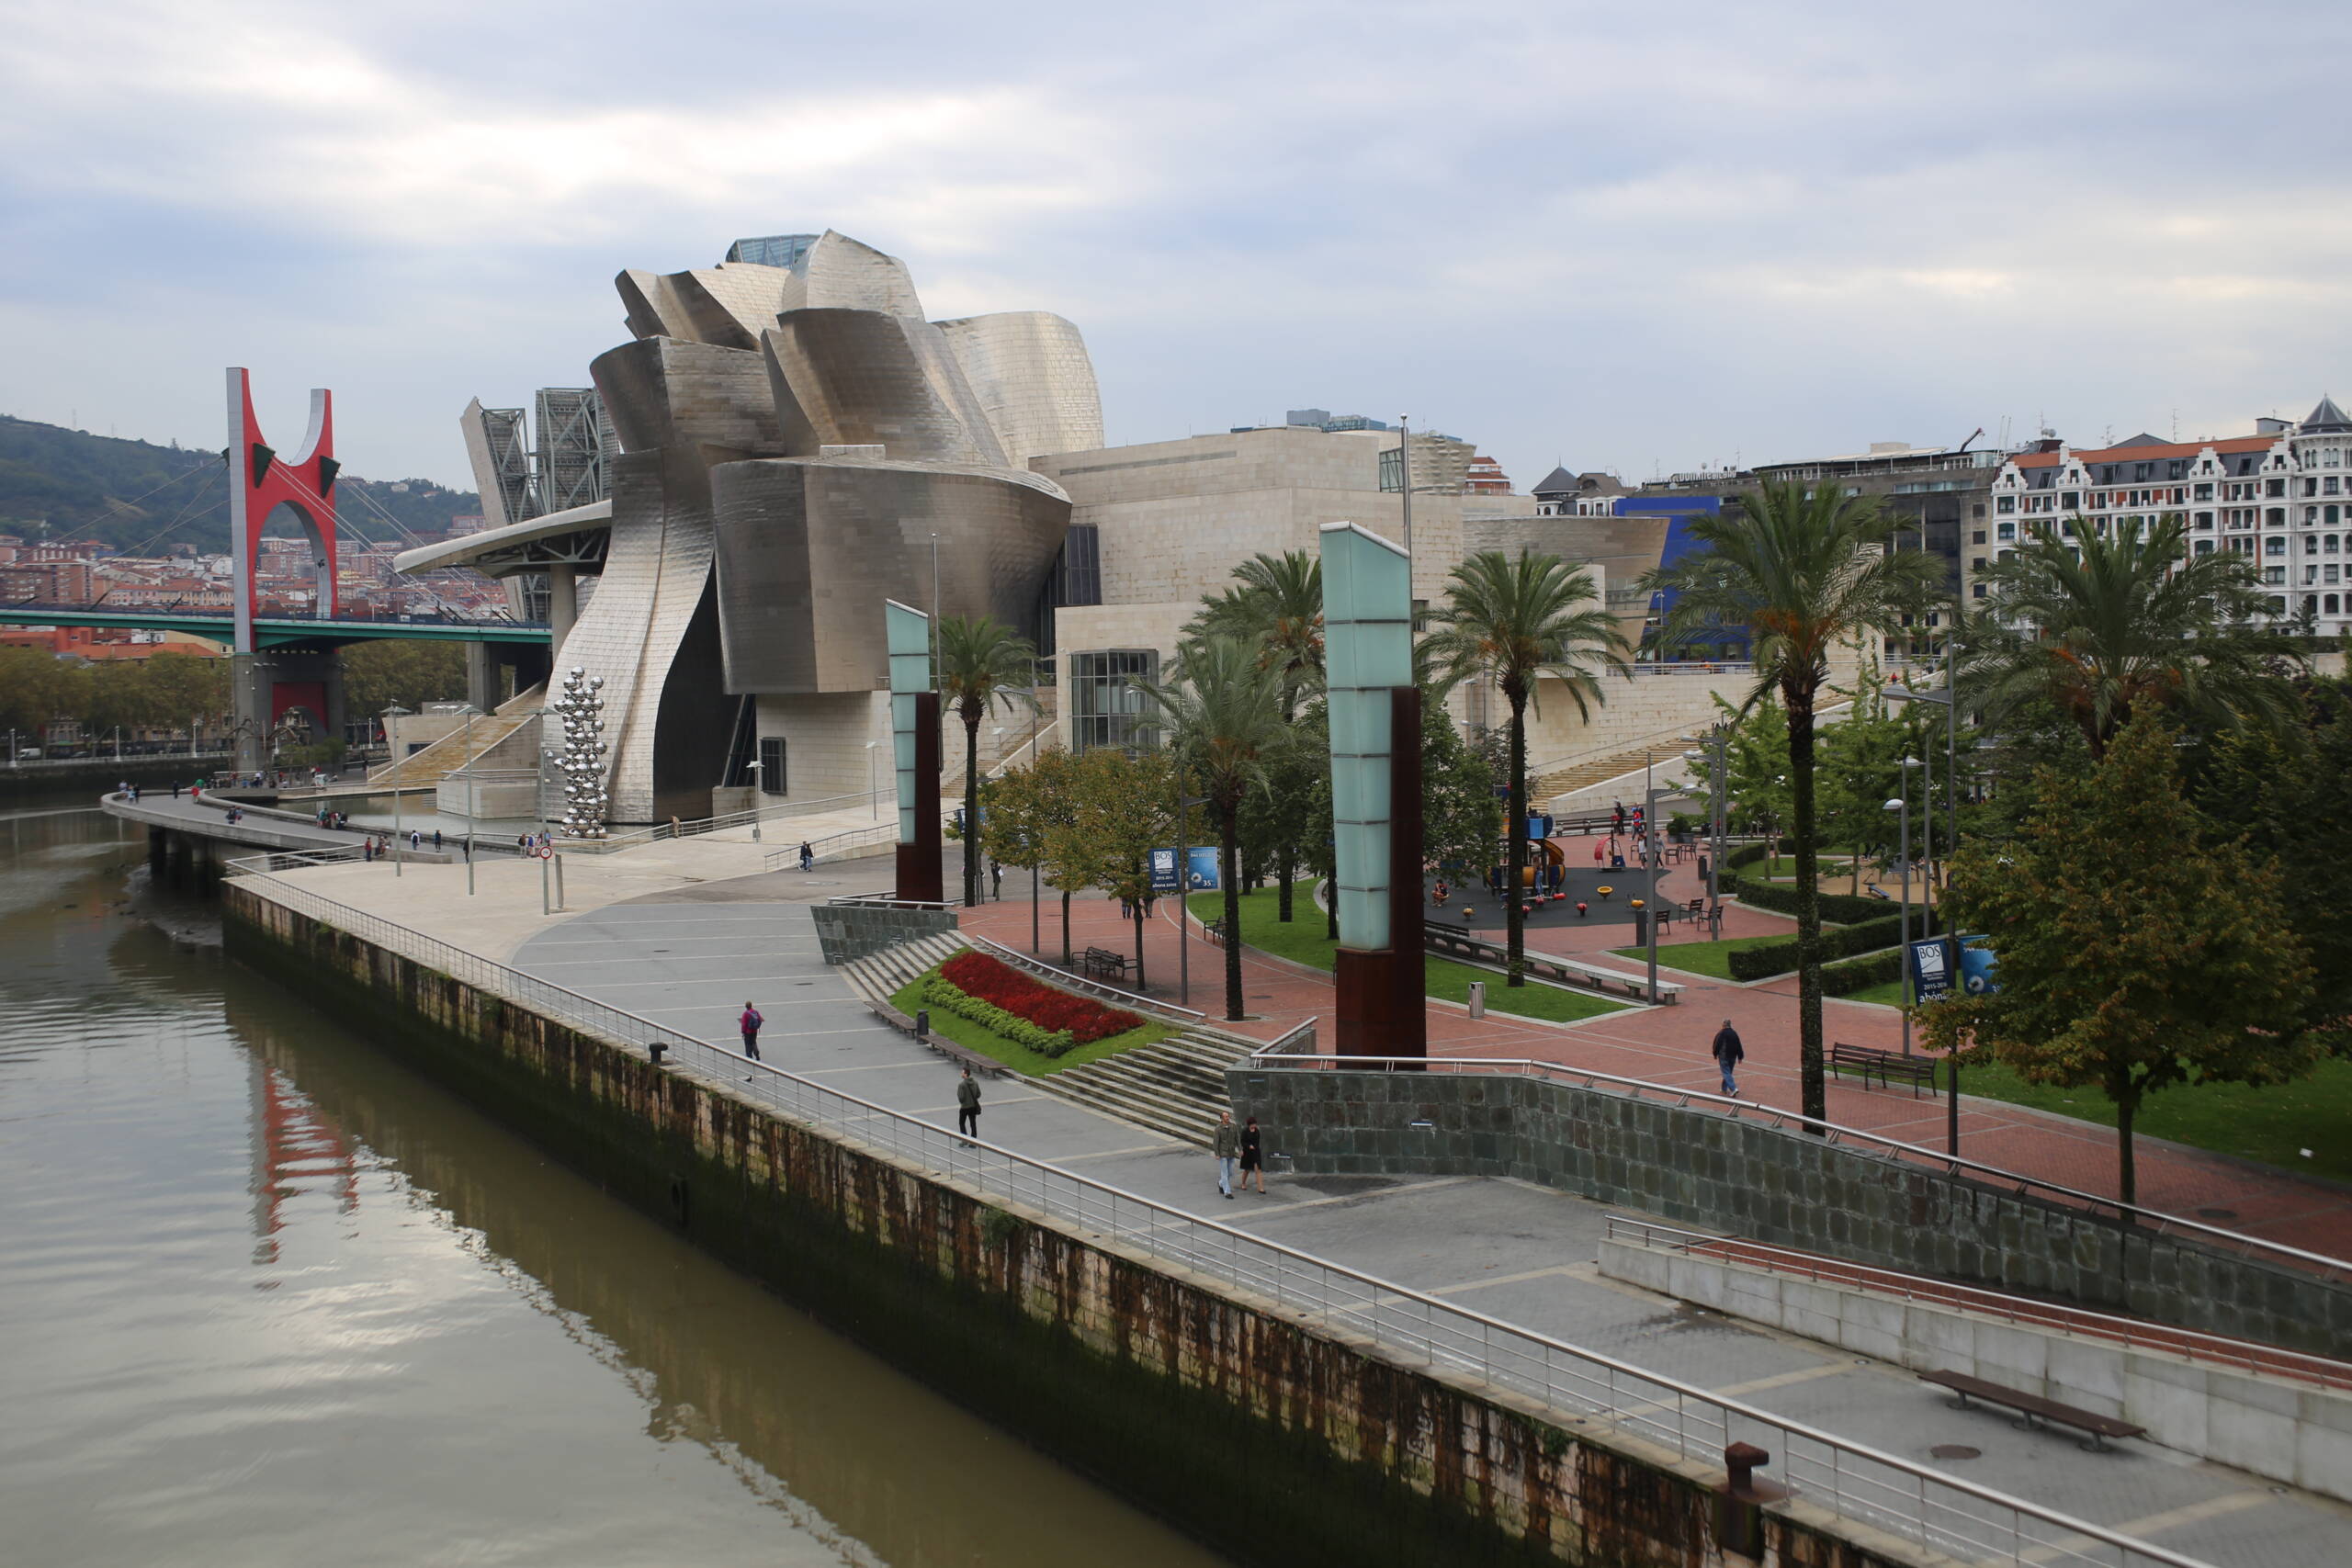 Frank Gehry's Guggenheim Museum in Bilbao